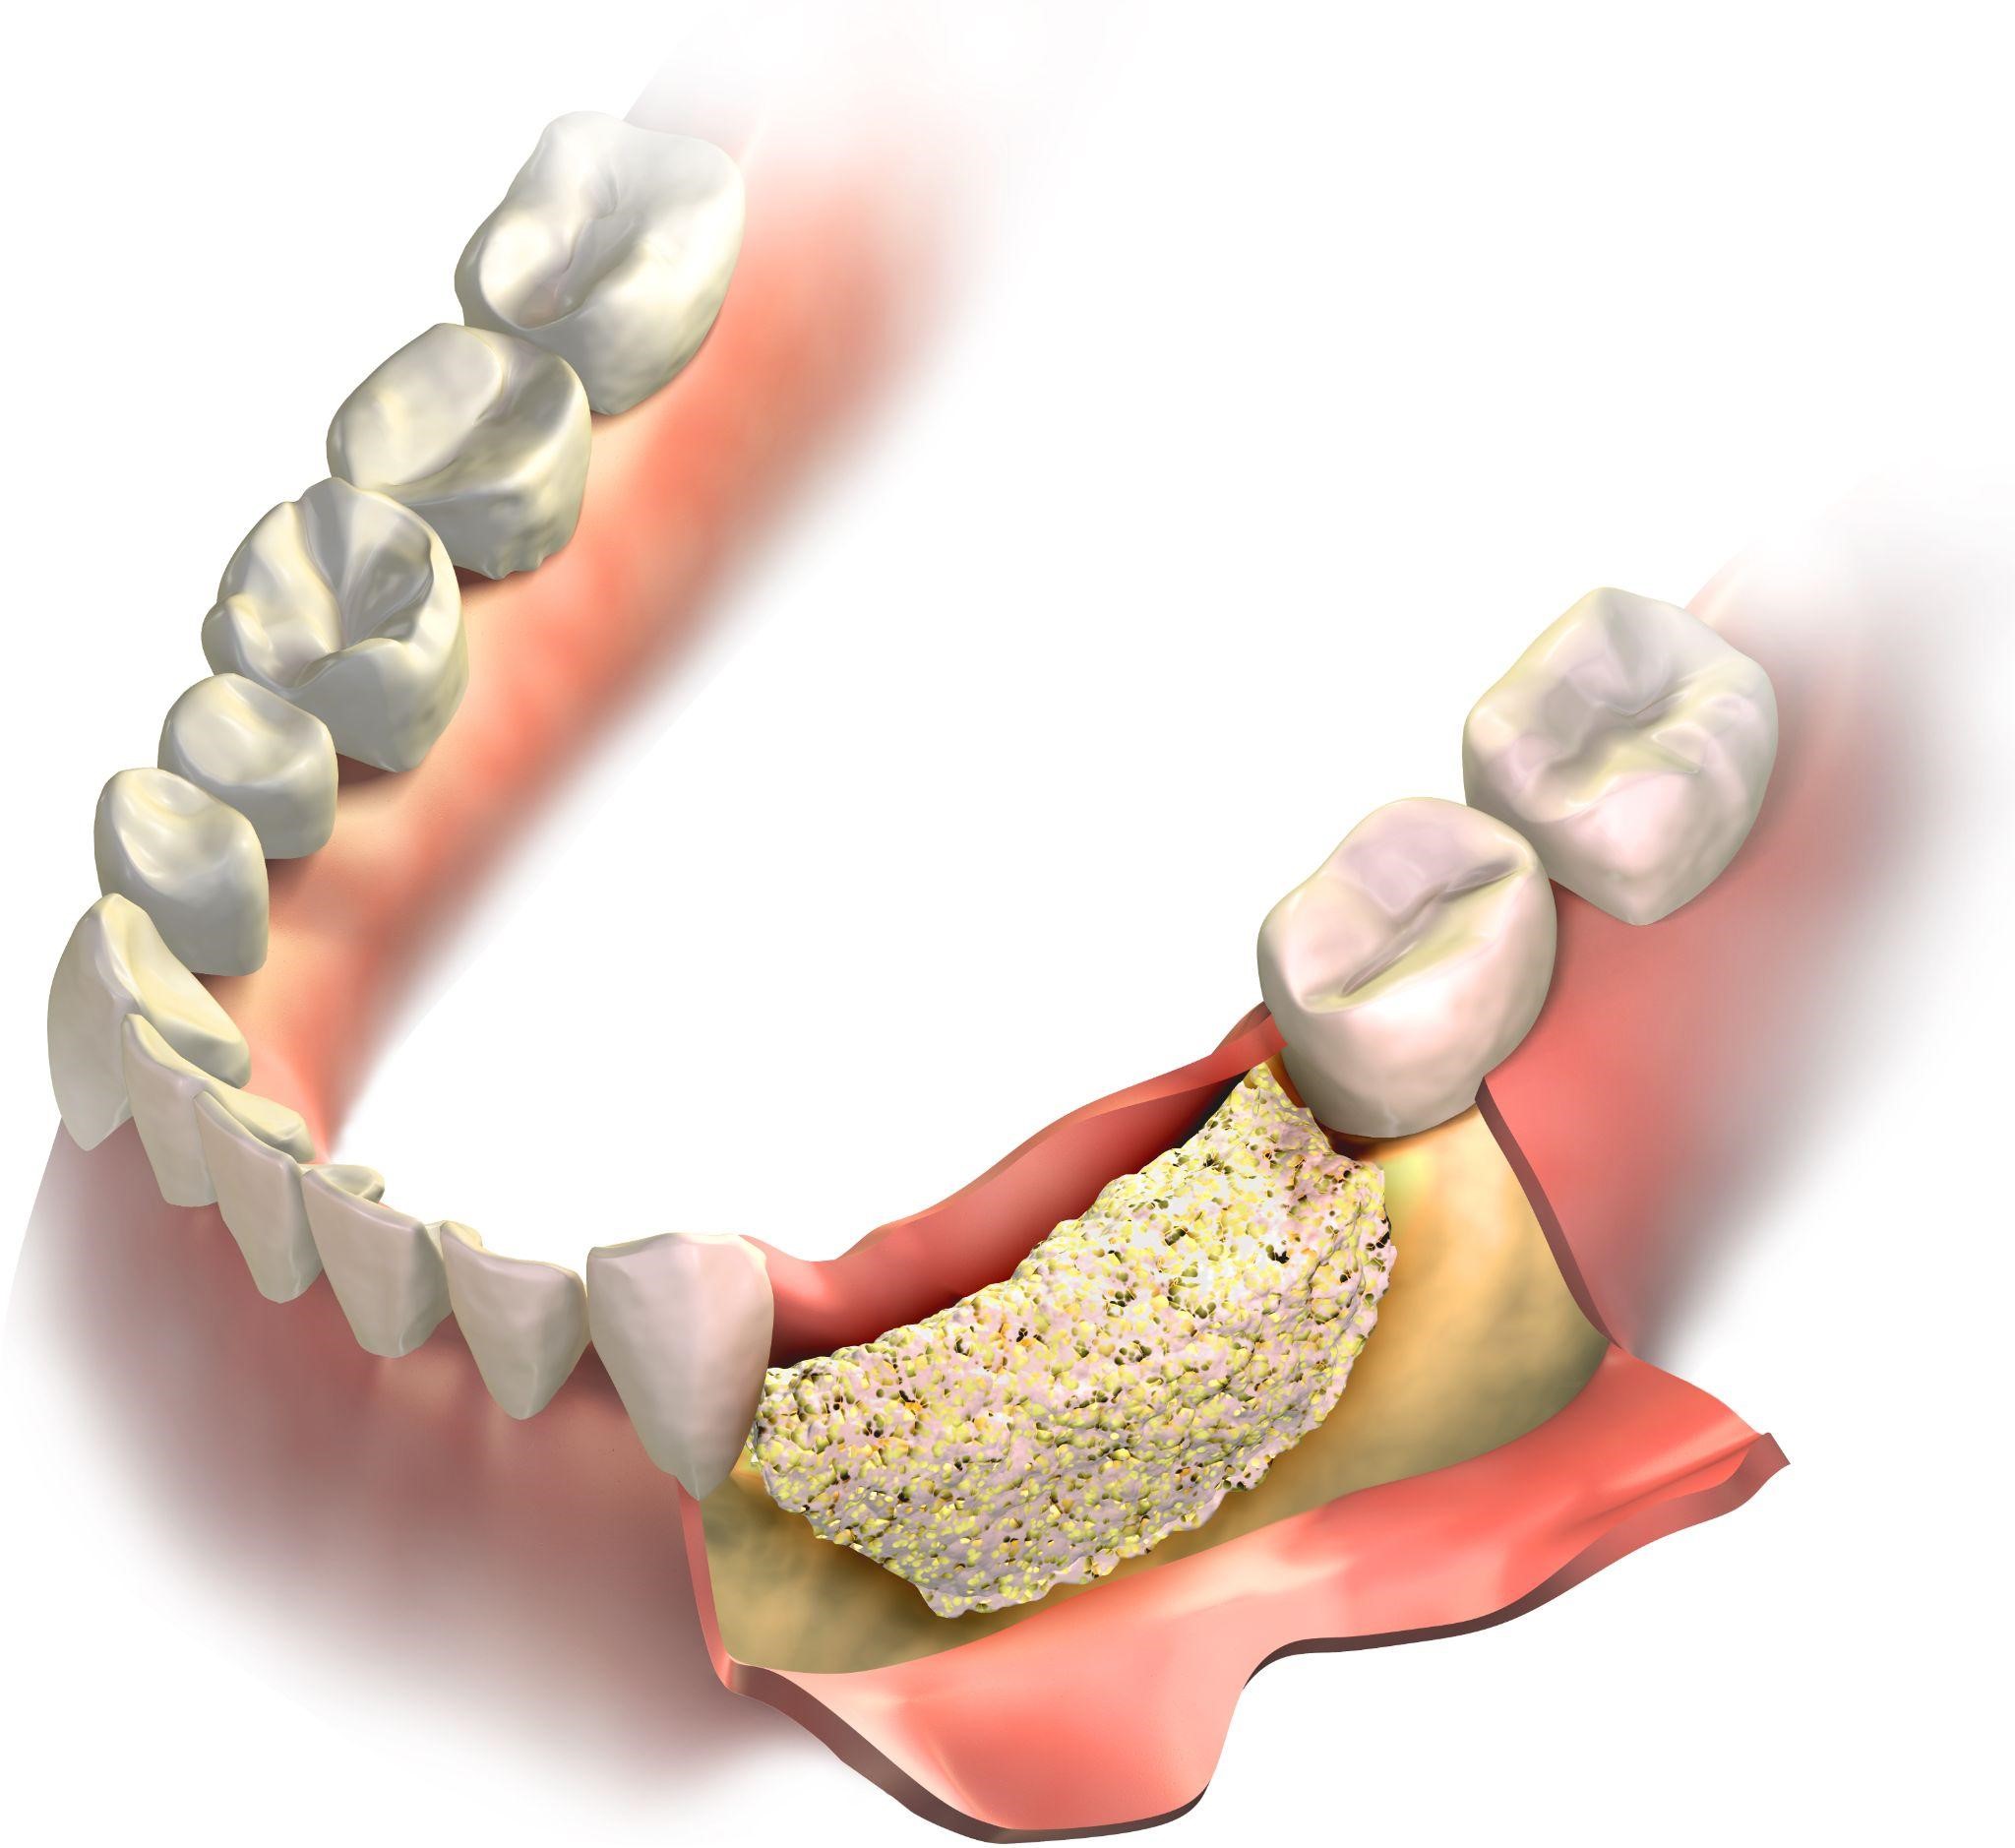 Восстановление костной ткани зубов. Остеопластика костной ткани челюстей. Костная пластика (остеопластика). Синус-лифтинг (костная пластика, остеопластика) закрытый. Пластика костной ткани при имплантации.